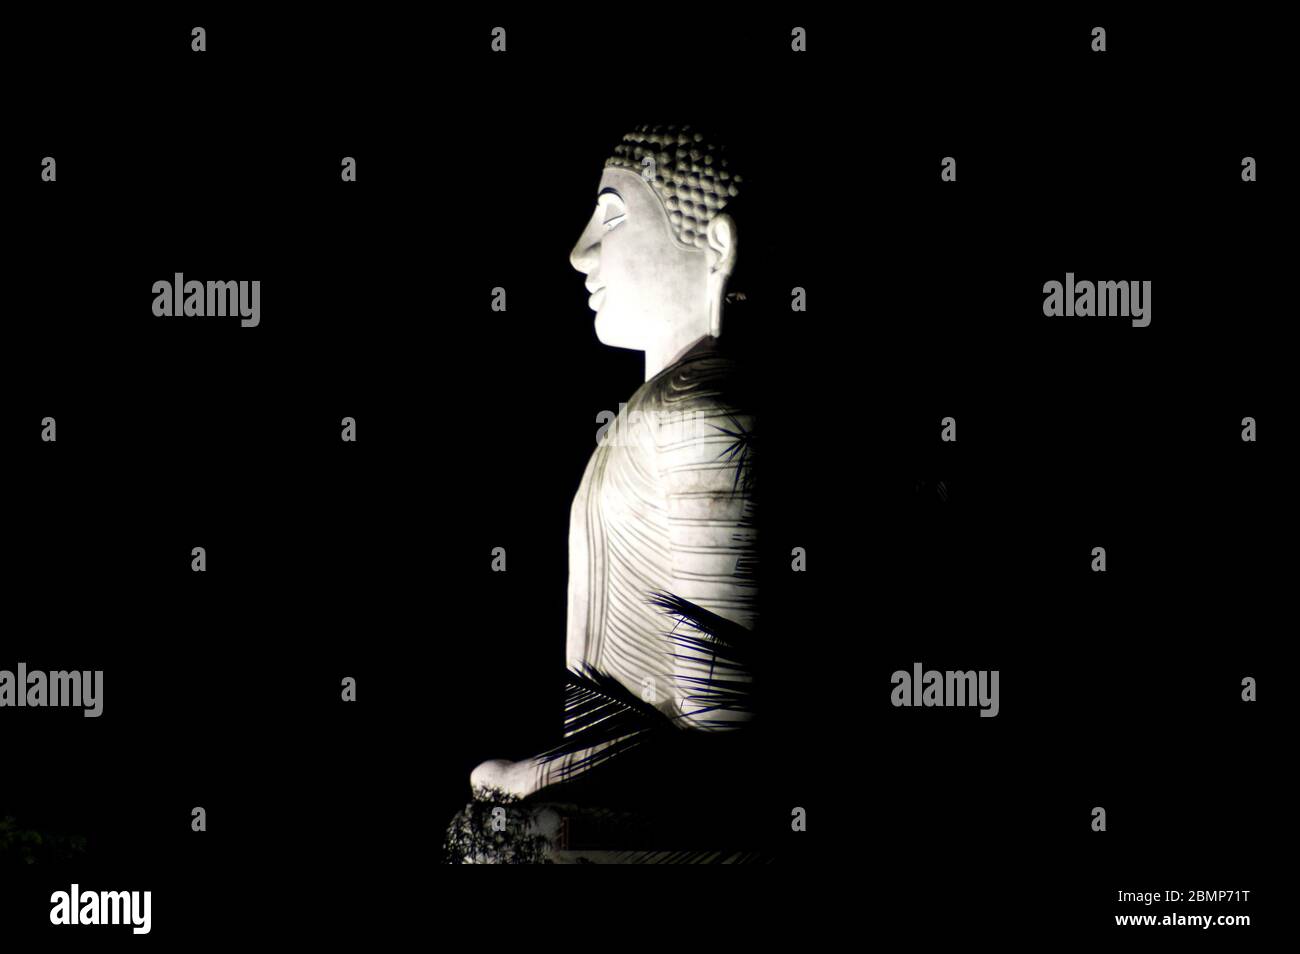 Una statua illuminata di buddha di signore a Kandy, Sri Lanka. Questa imponente statua in pietra è una delle principali attrazioni di Kandy. Foto Stock